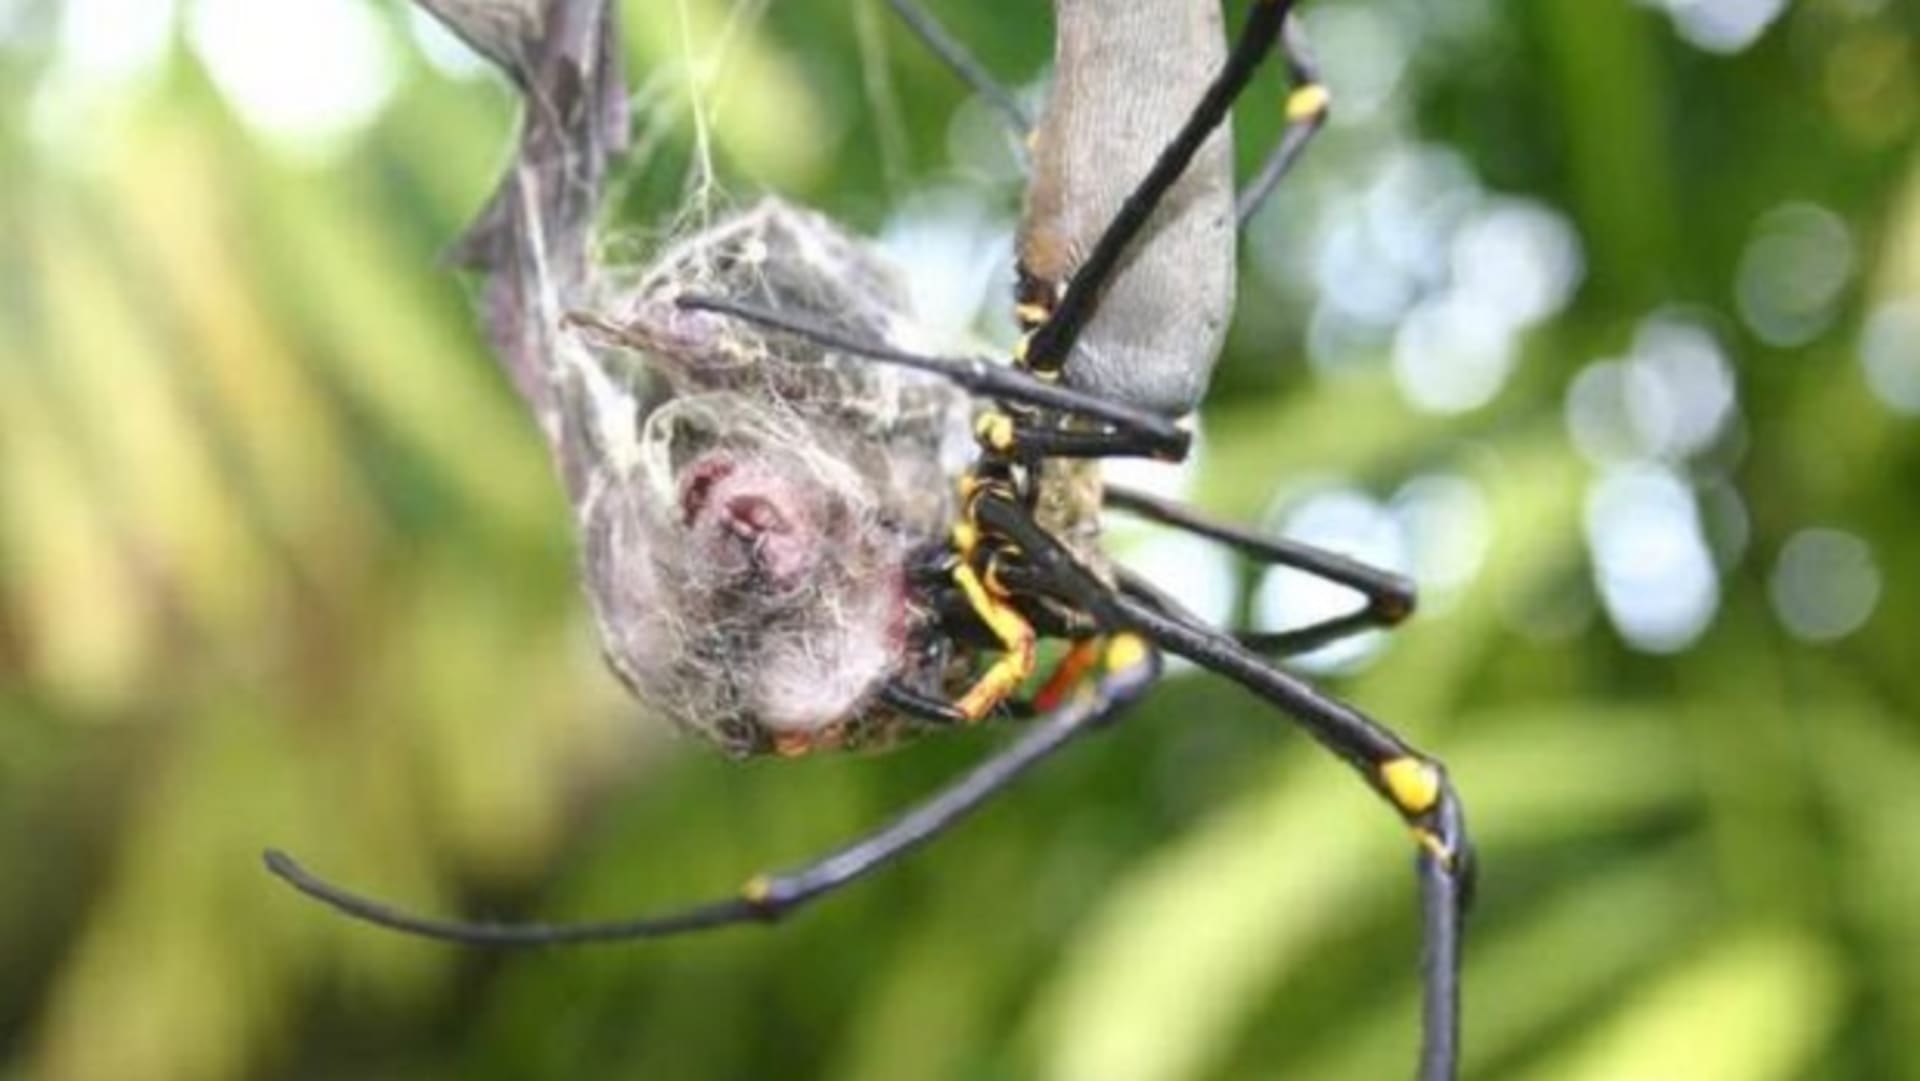 Pavouk sežral celého netopýra